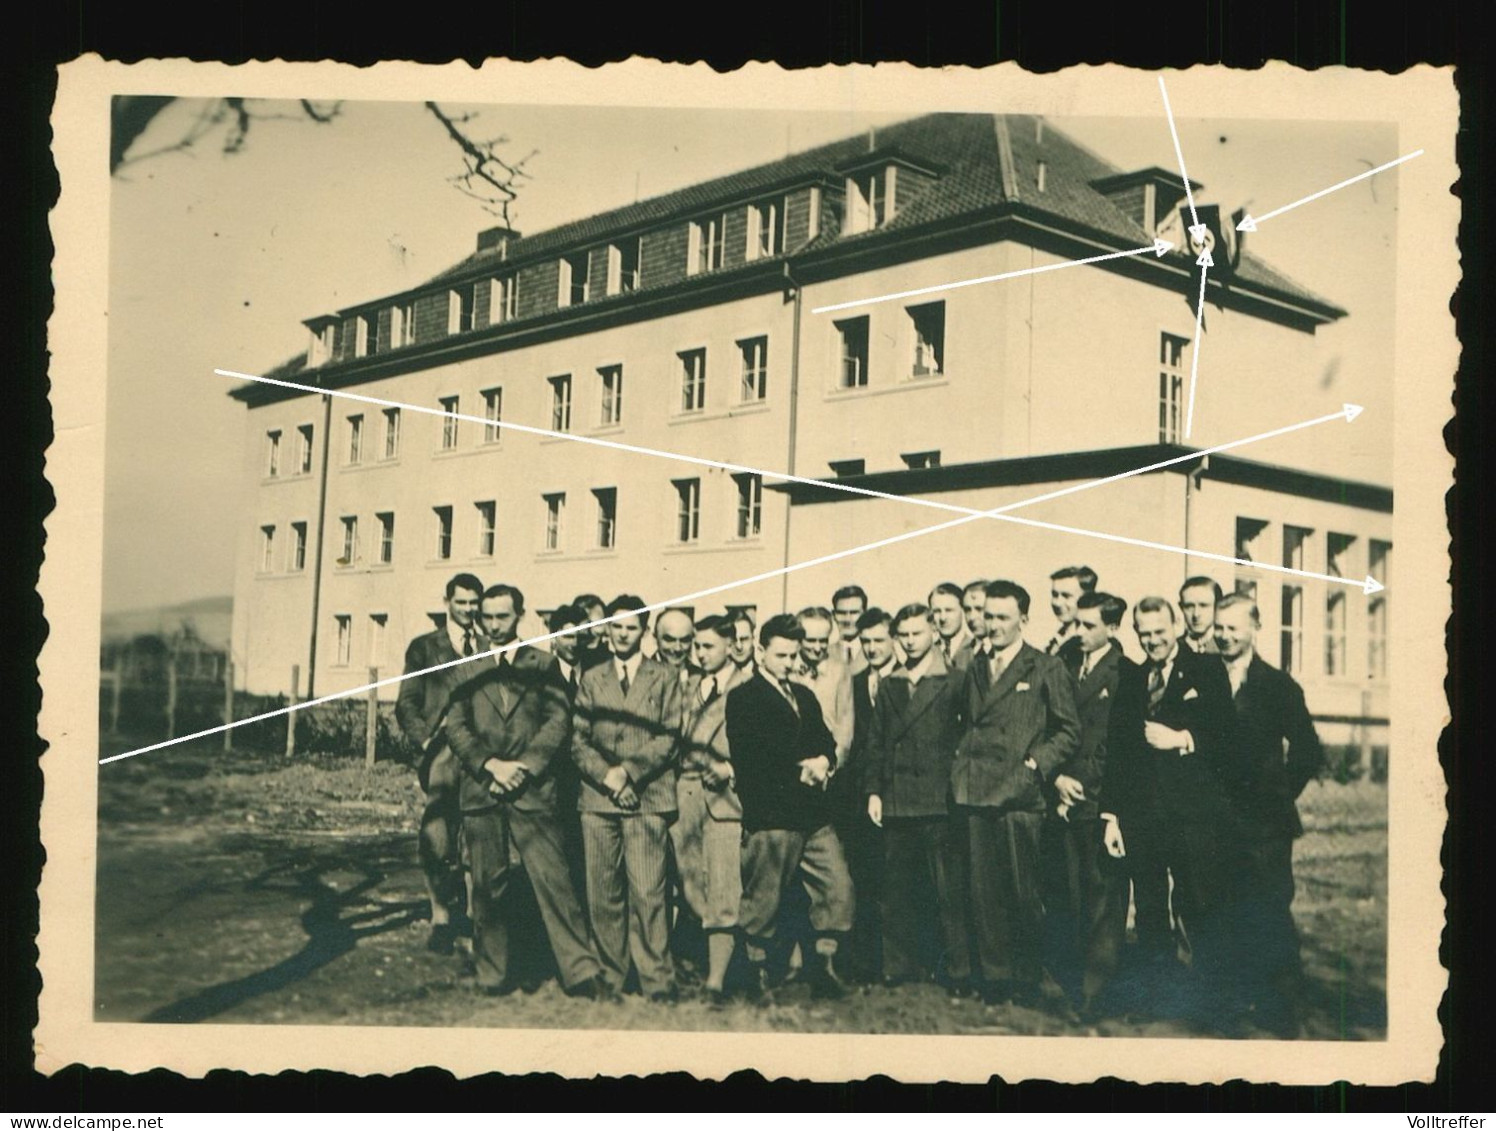 Orig. Foto 1933 Jungen Vor Gebäude Sprachenkonvikt Göttingen, Gerhard-Uhlhorn-Konvikt, Hakenkreuz Fahne - Goettingen